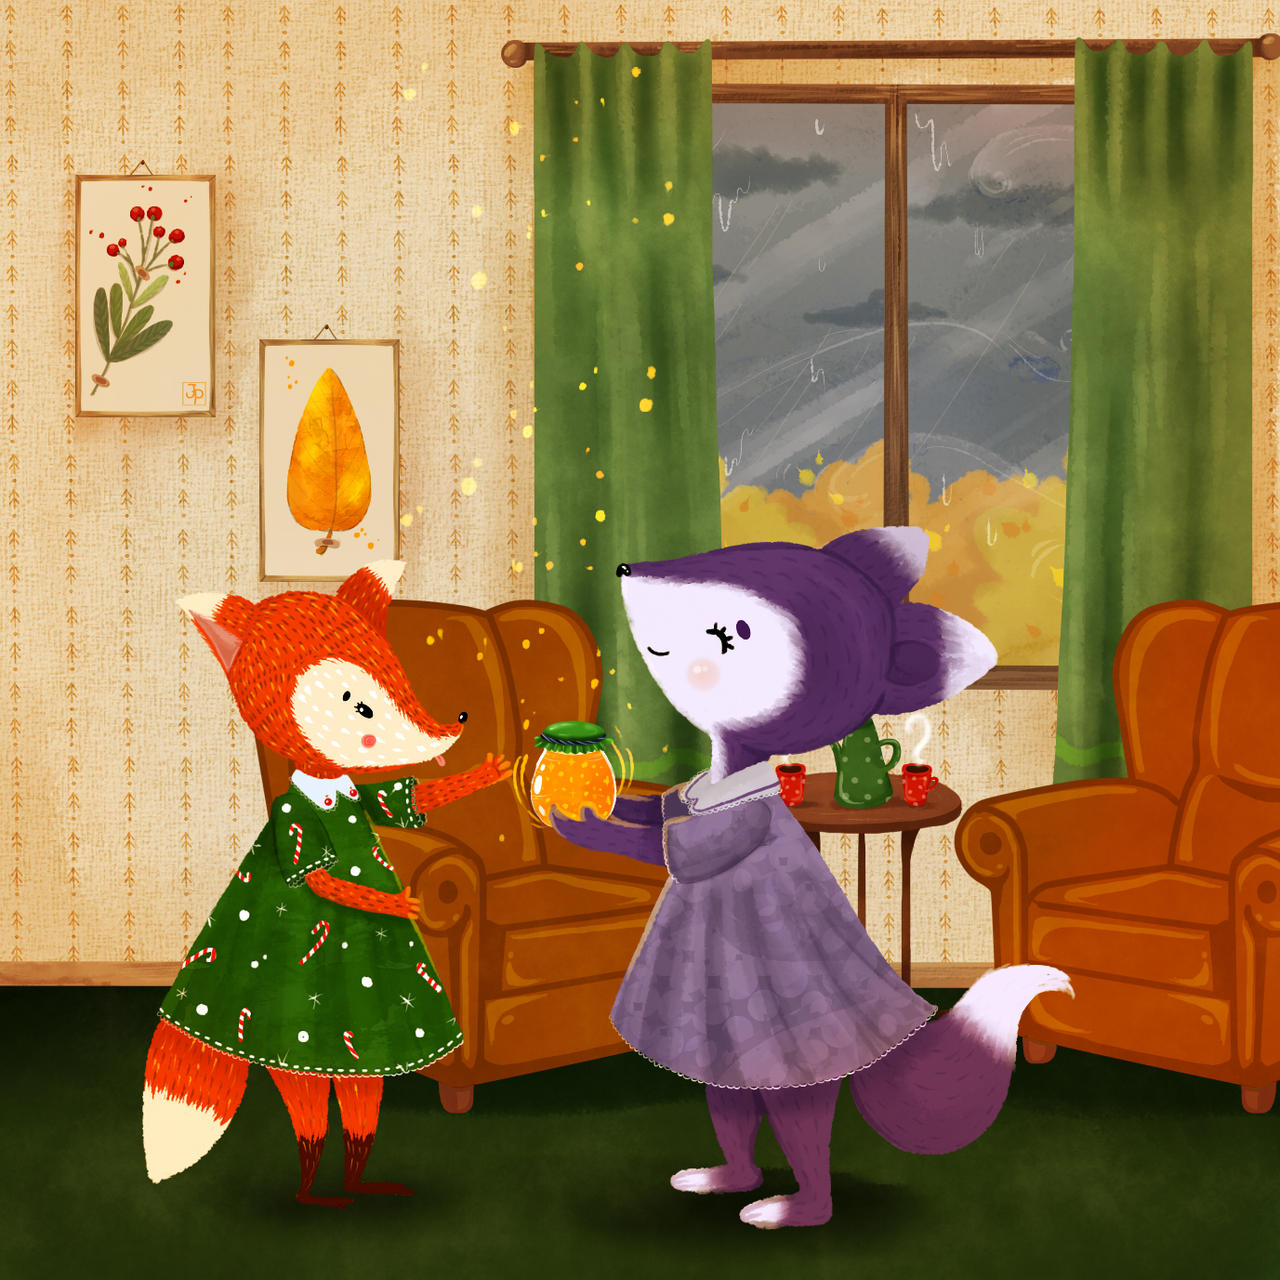 The Tale of Friends by Julia-po-artist on DeviantArt